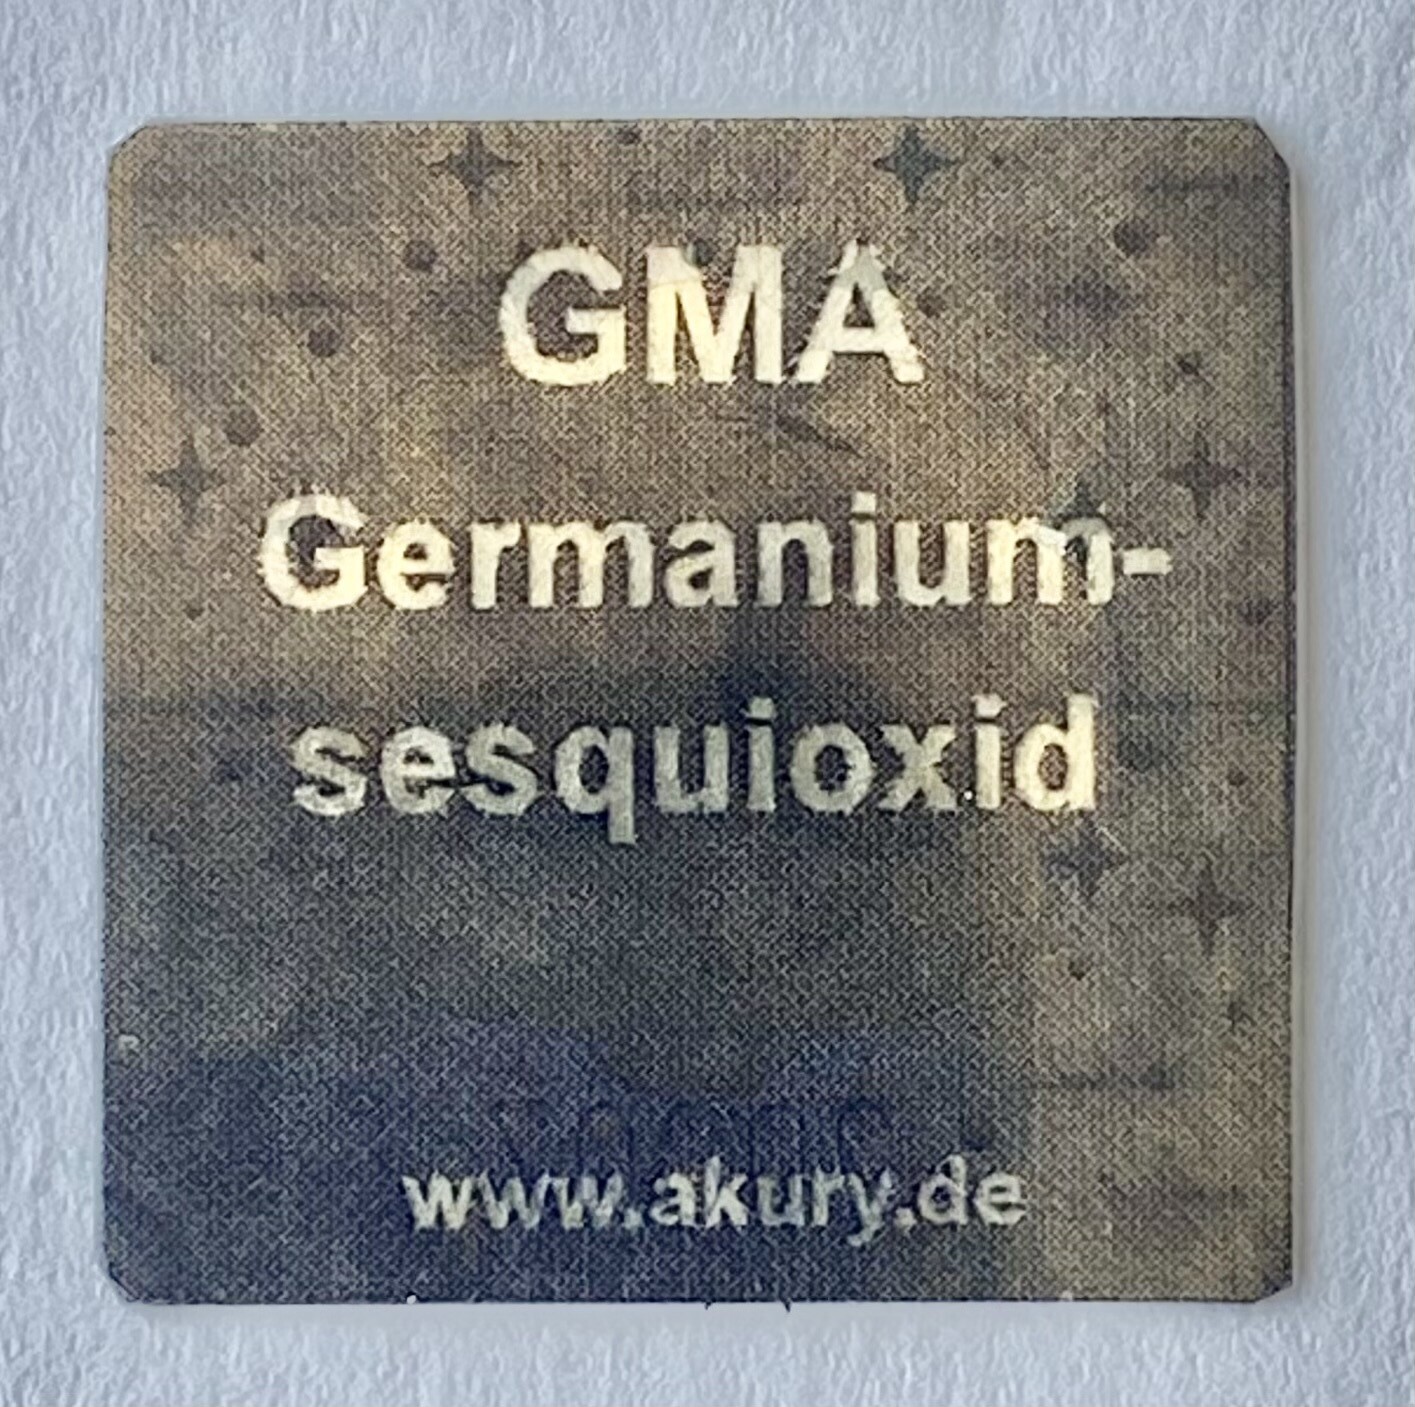 Chip "GMA – Germanium sesquioxid"